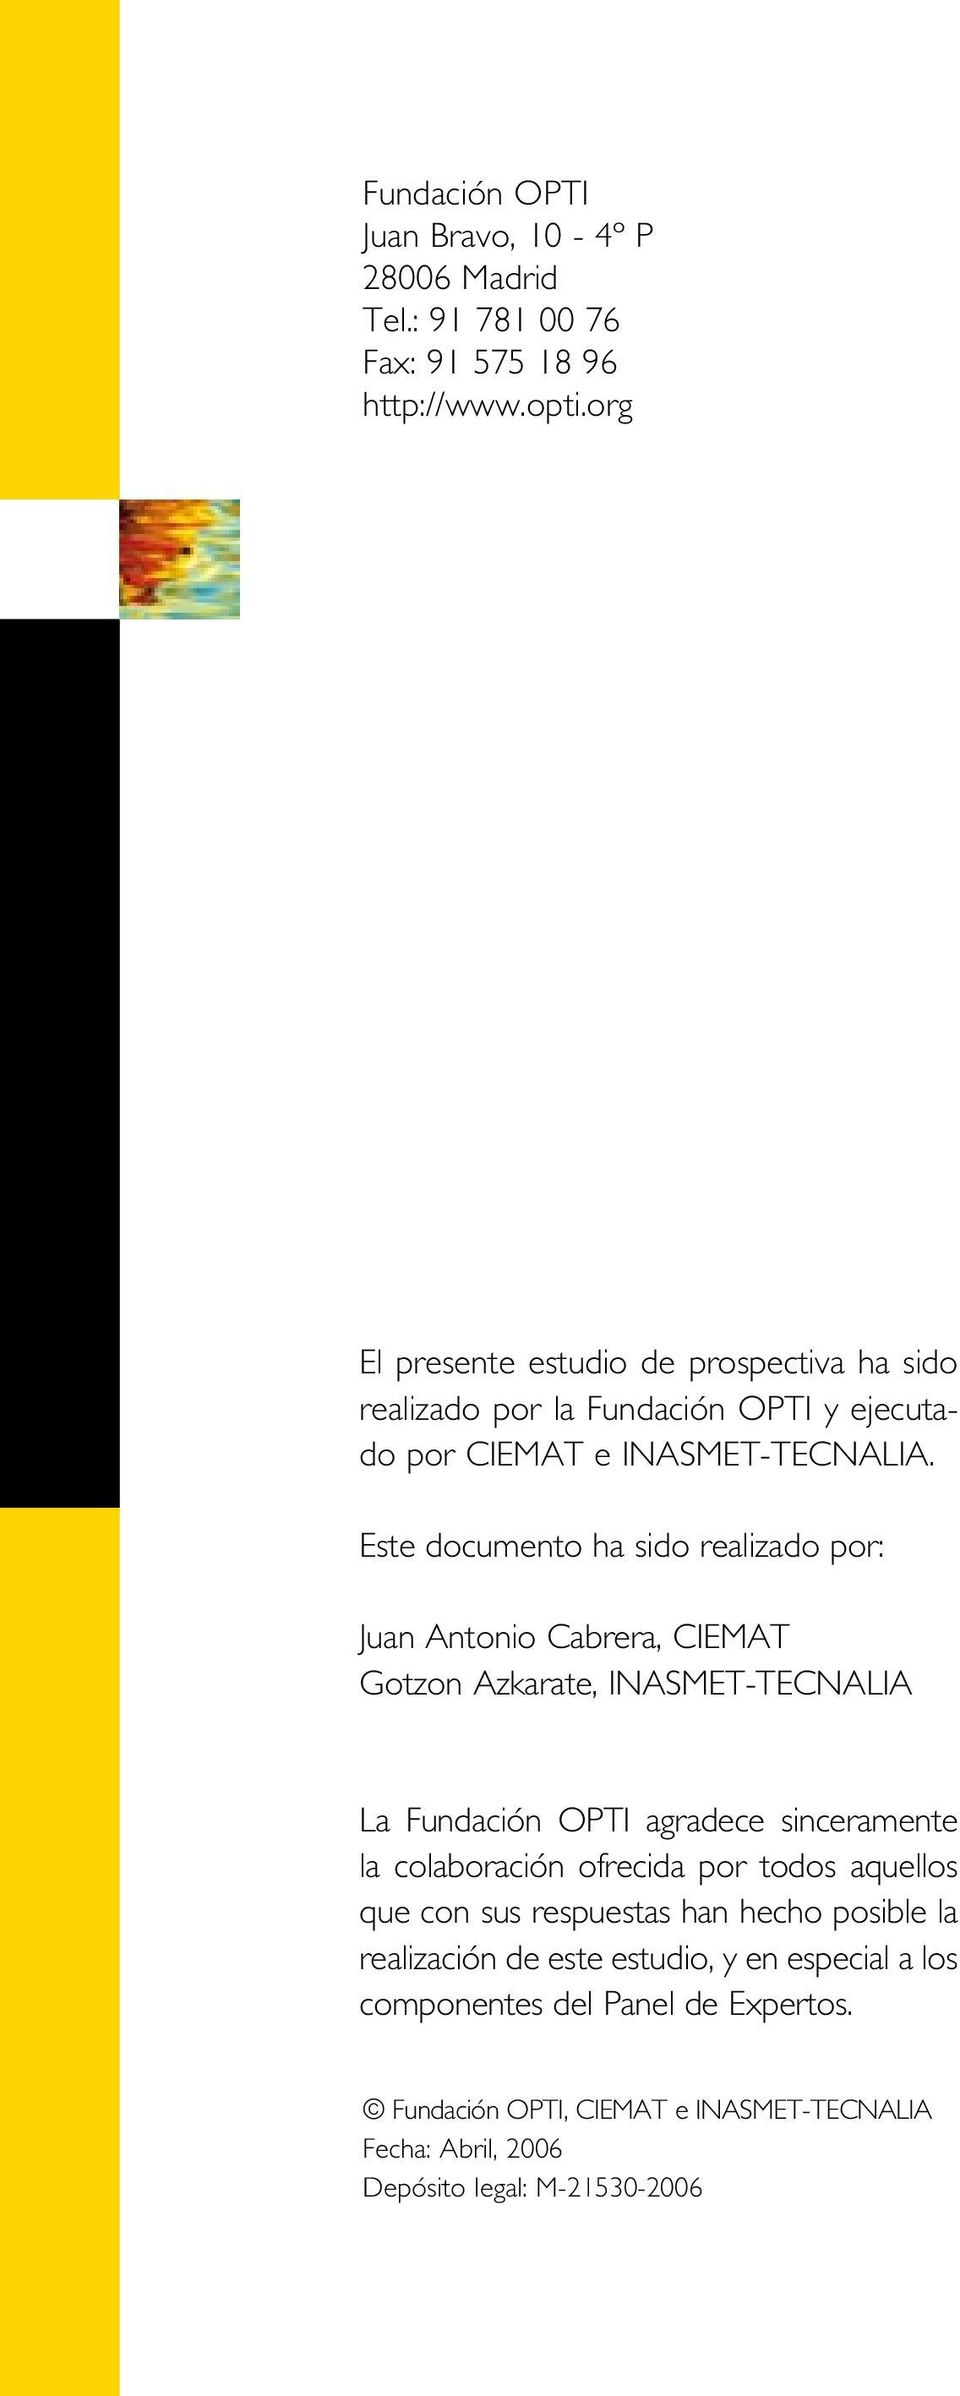 Este documento ha sido realizado por: Juan Antonio Cabrera, CIEMAT Gotzon Azkarate, INASMET-TECNALIA La Fundación OPTI agradece sinceramente la colaboración